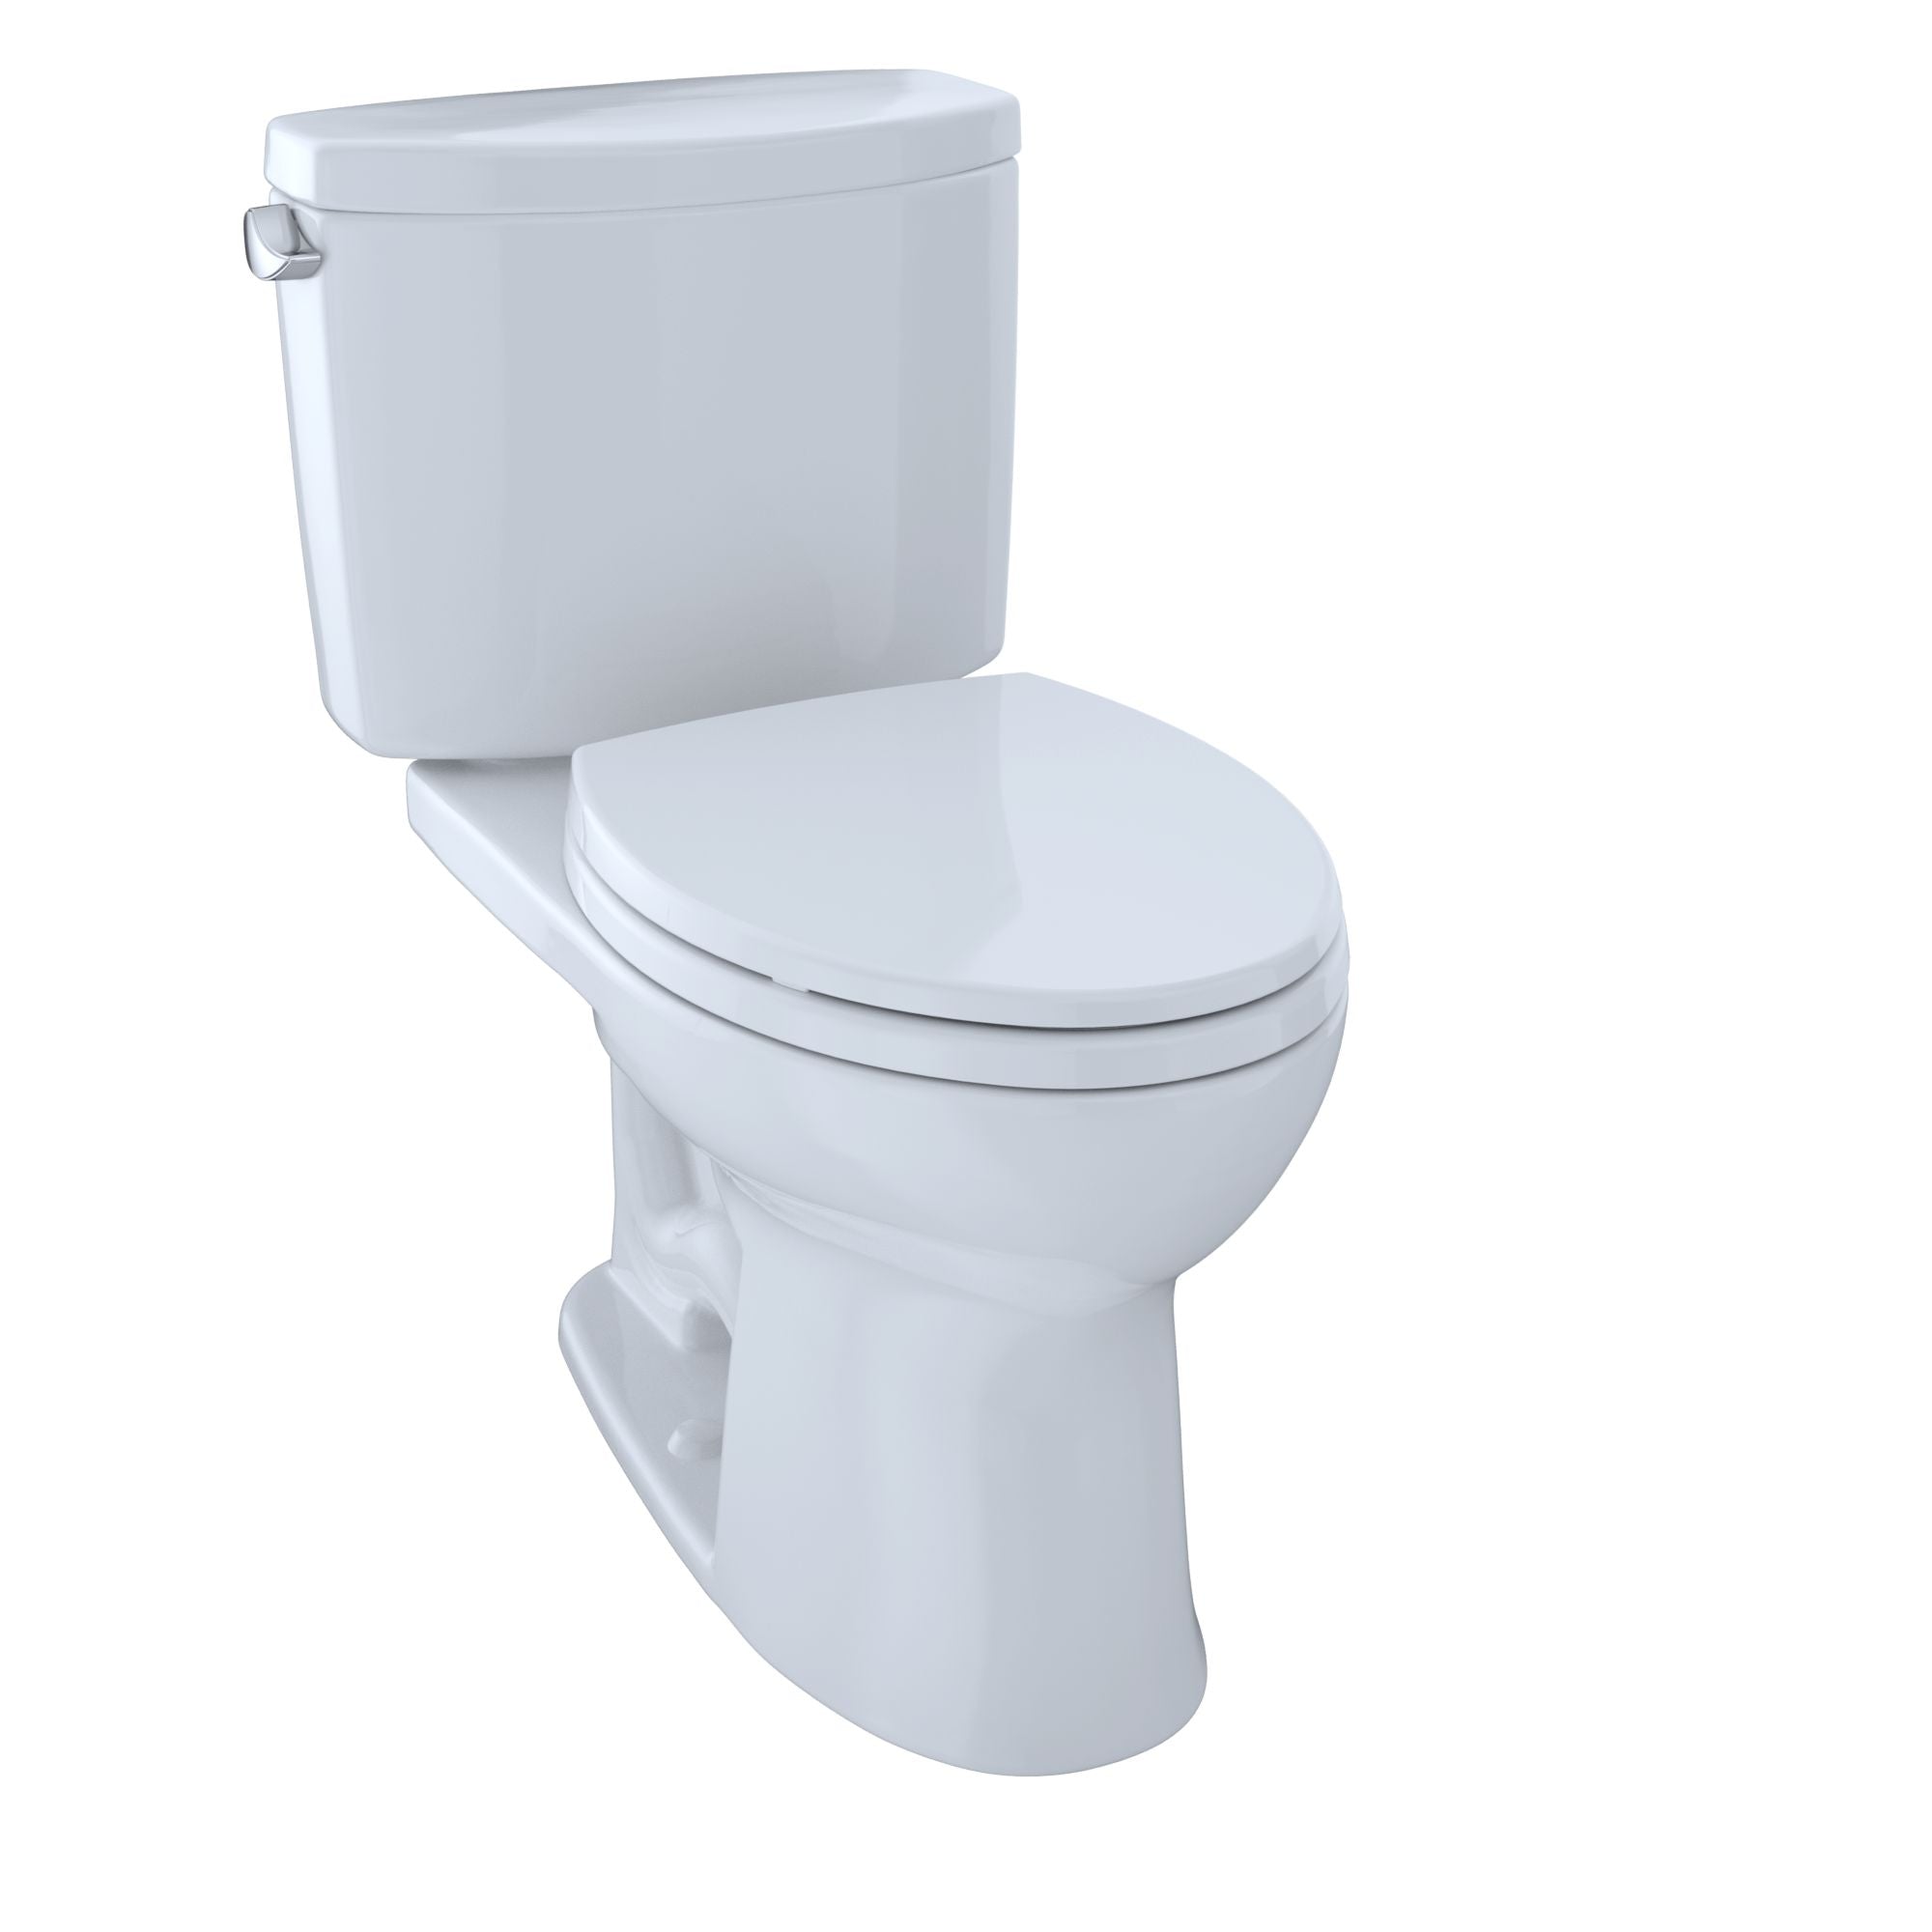 cotton toilet seat